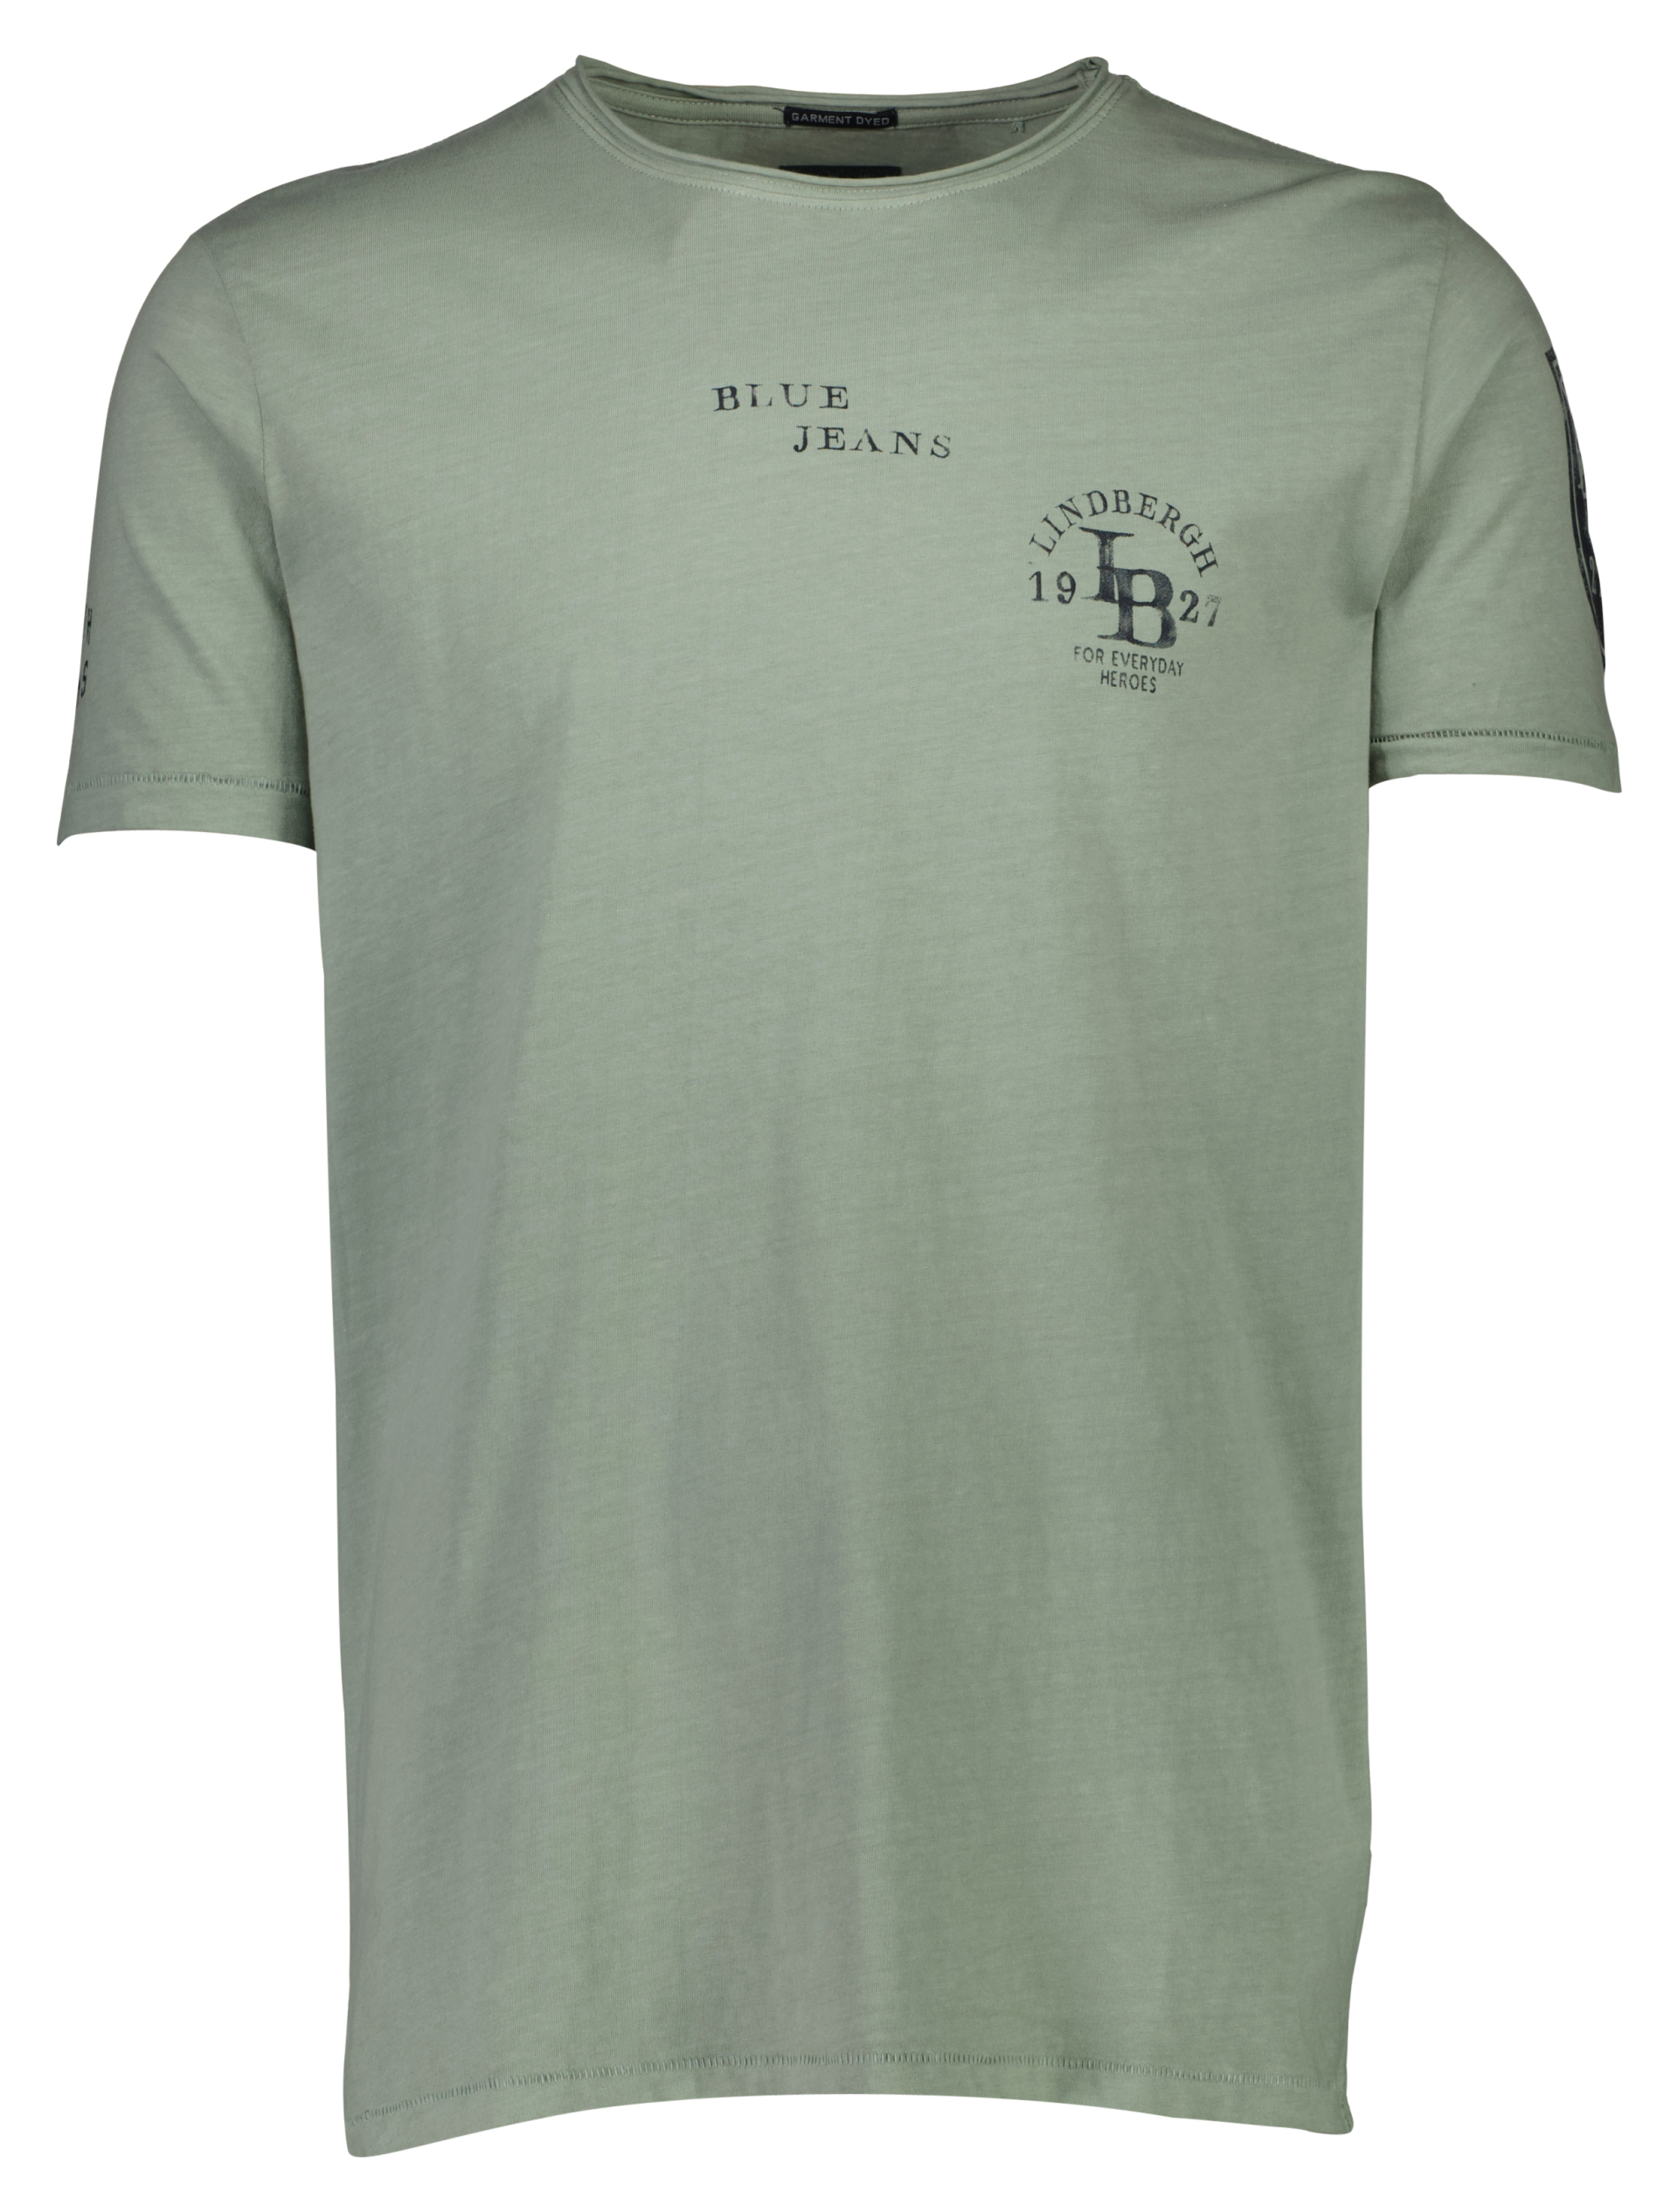 Lindbergh T-shirt grøn / mint